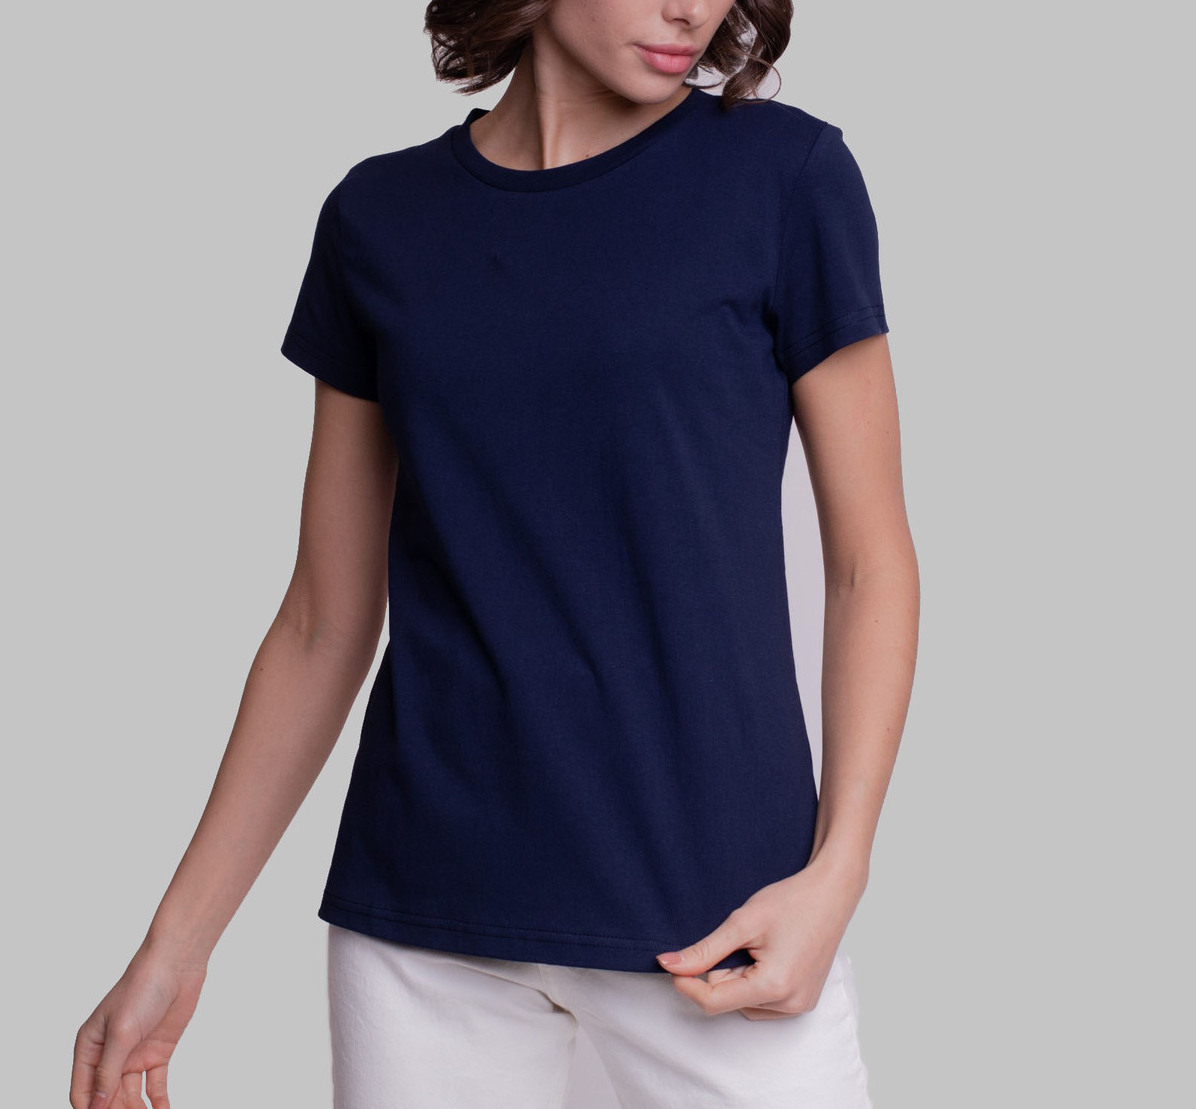 Скидка на женскую футболку темно-синюю из 100% хлопка плотностью 160 гр, размеры: M / L